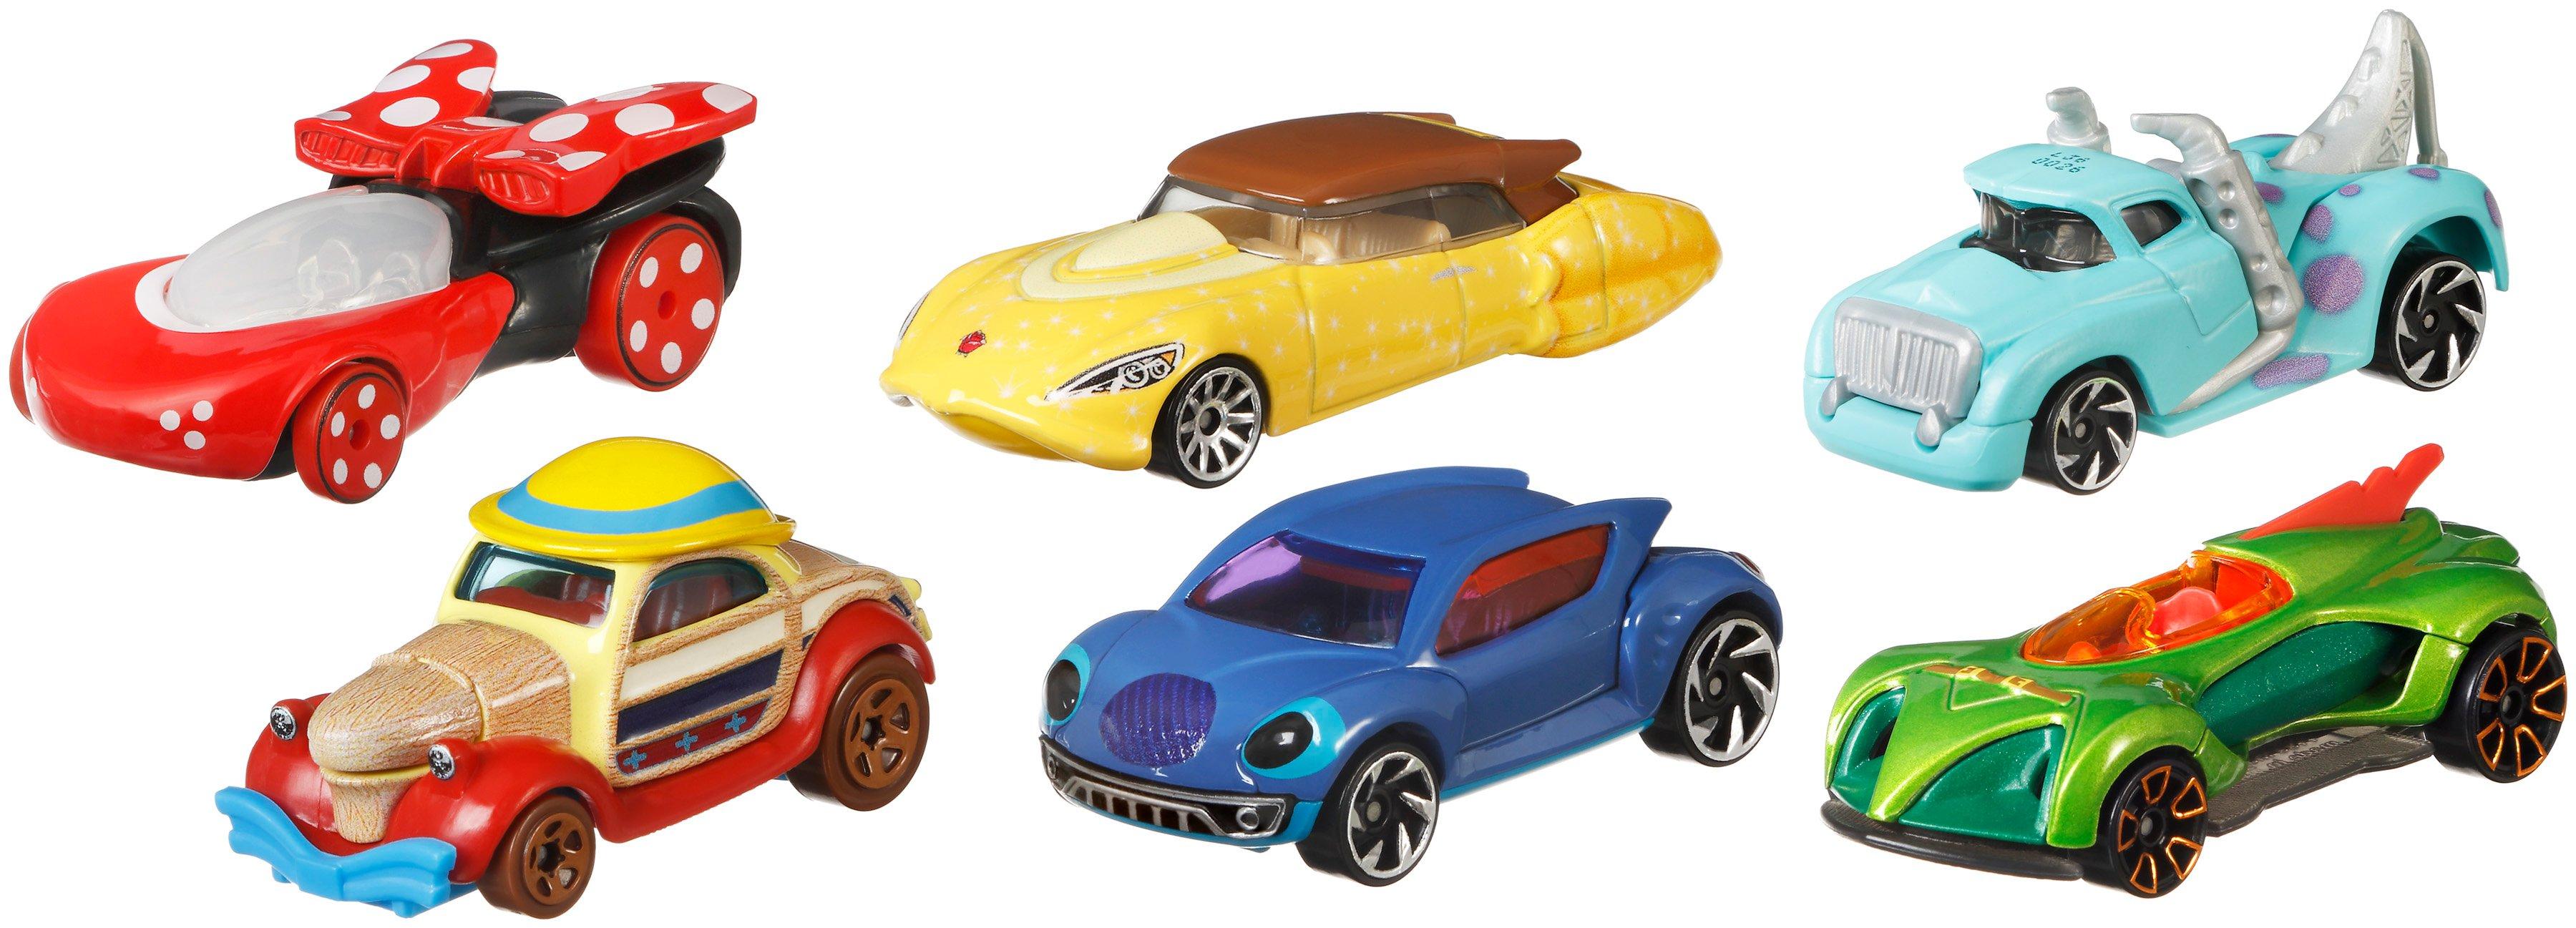 Hot Wheels Disney Pixar Cars Assortment Gamestop